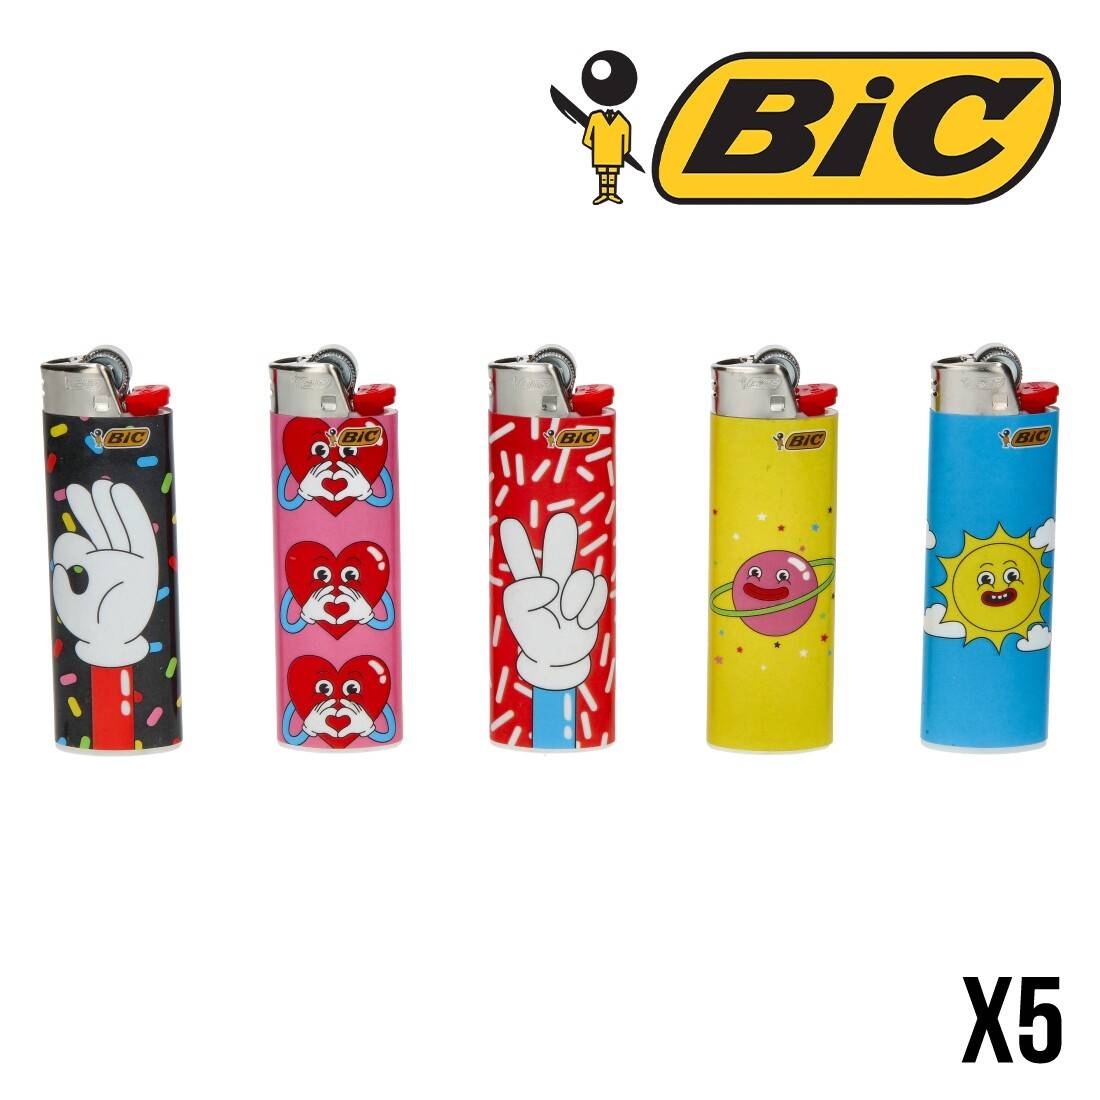 Briquet Bic Digital Maxi J26 - A partir de 1,30 €